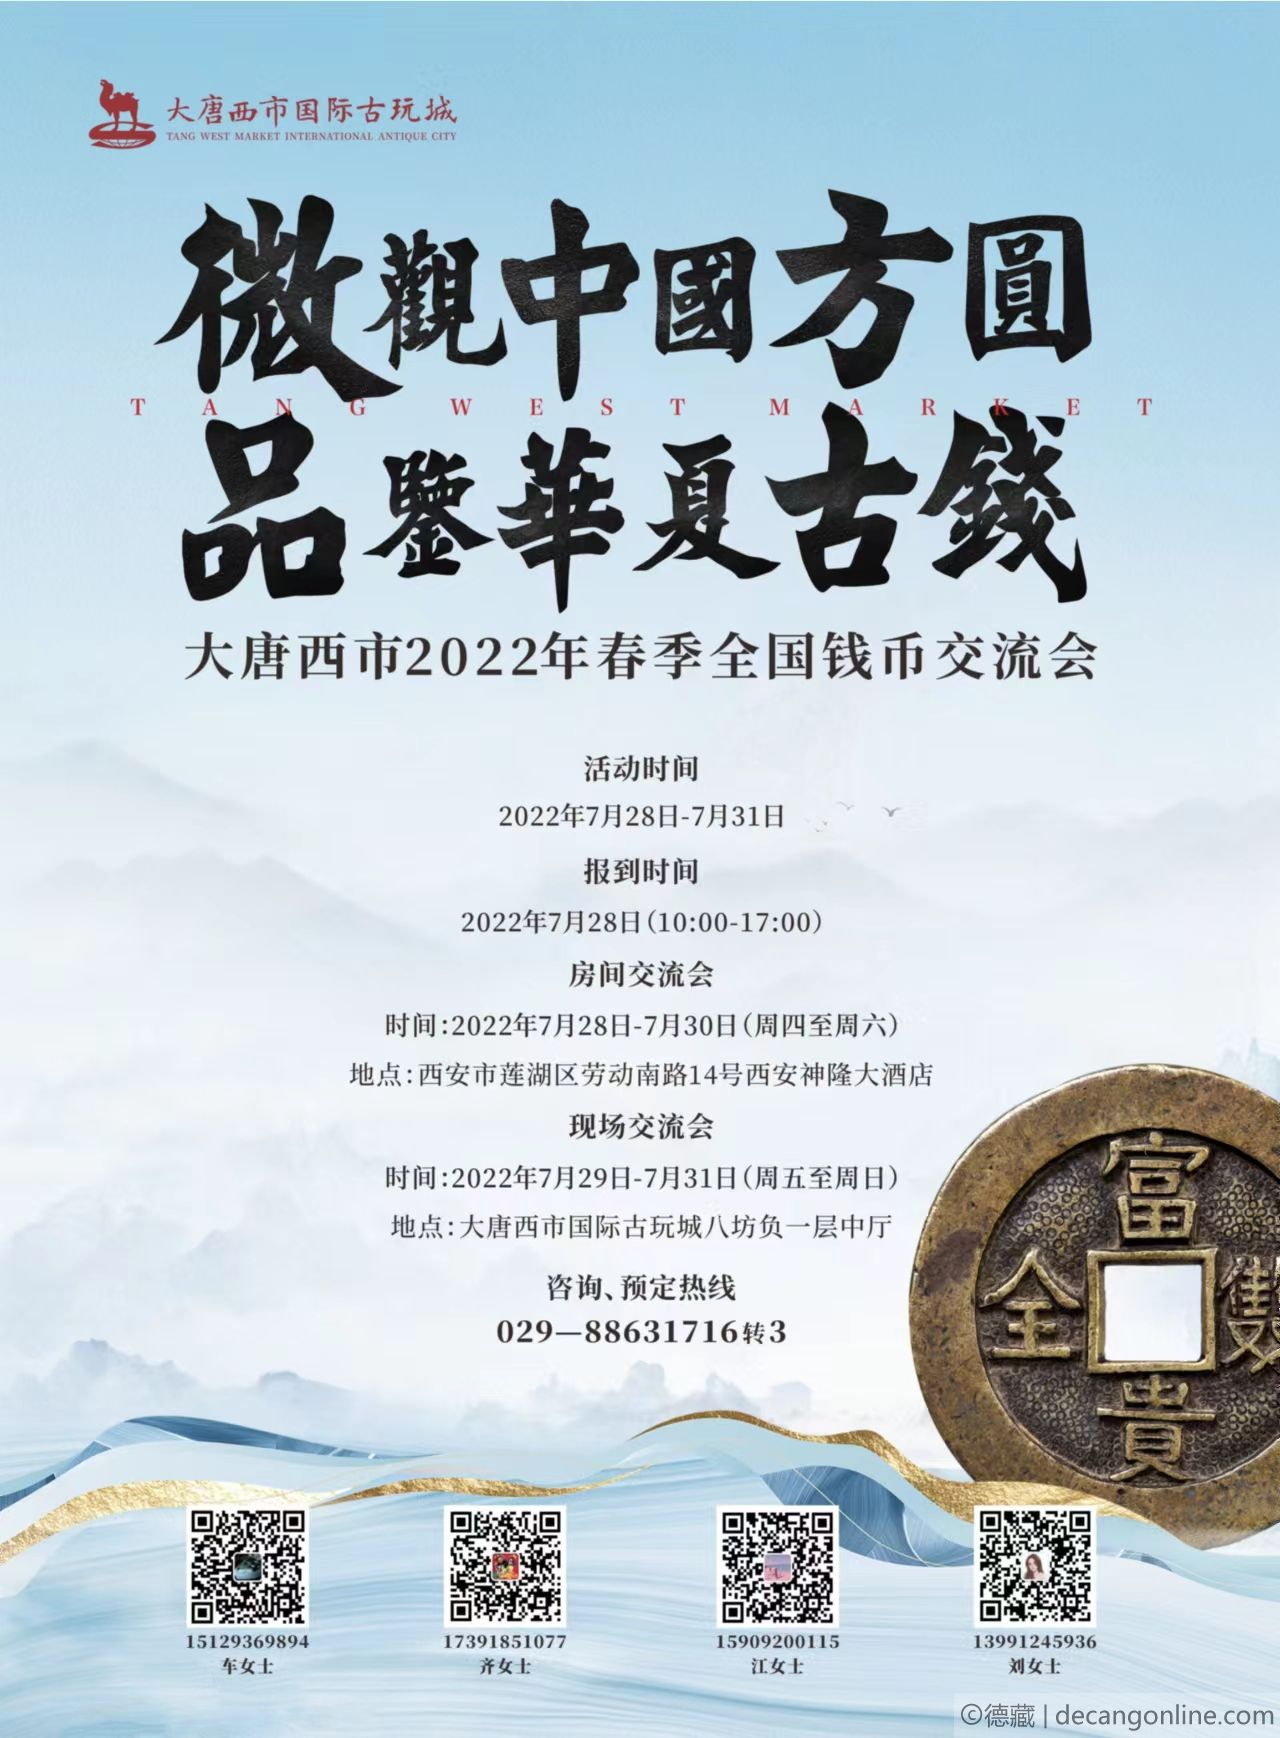 德藏将参展2022年7月29-31日西安大唐西市全国钱币交流会